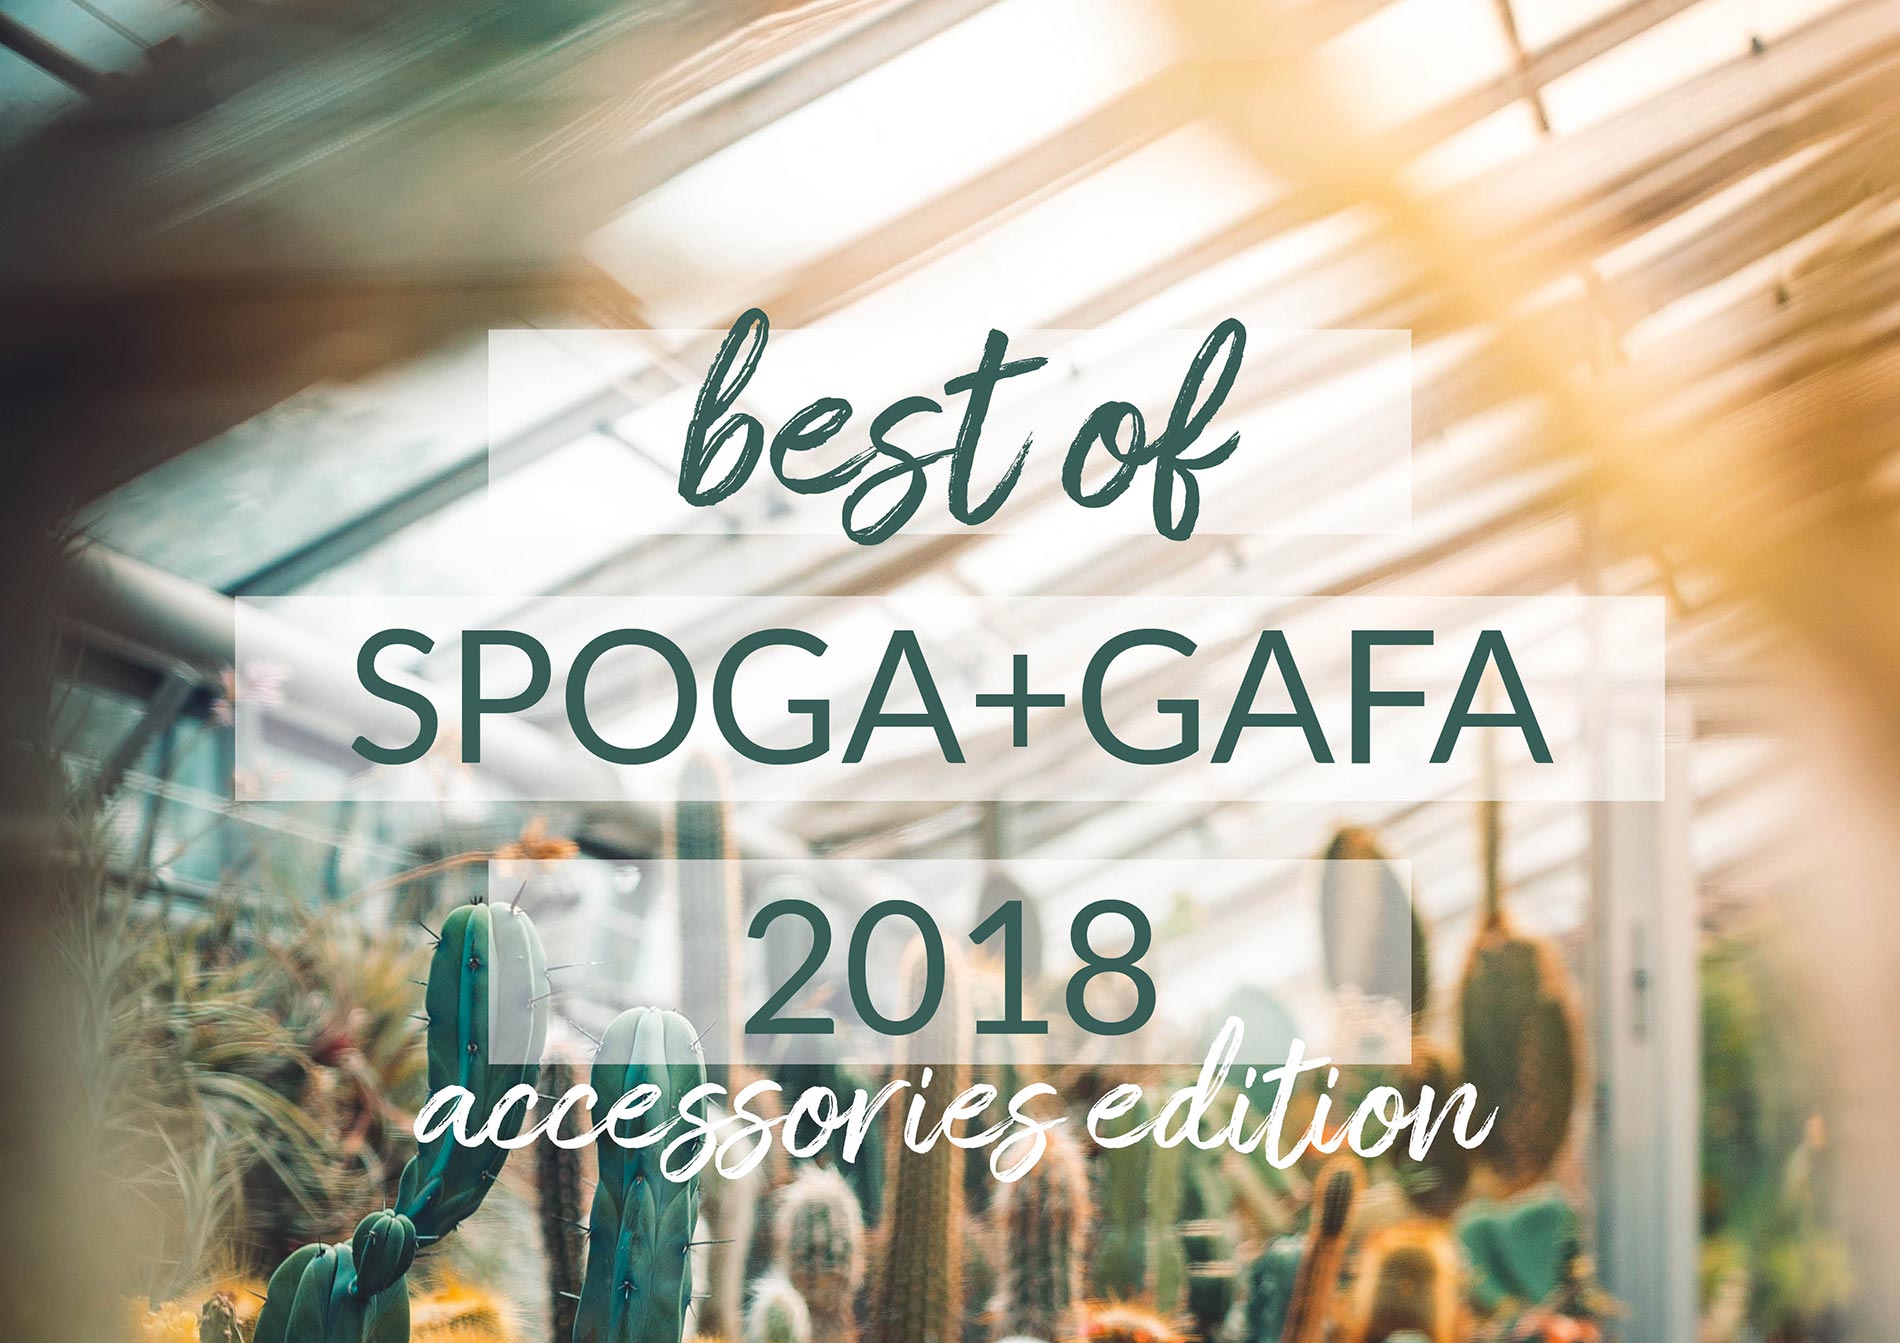 design vases and gardening - best of Spoga+Gafa 2018